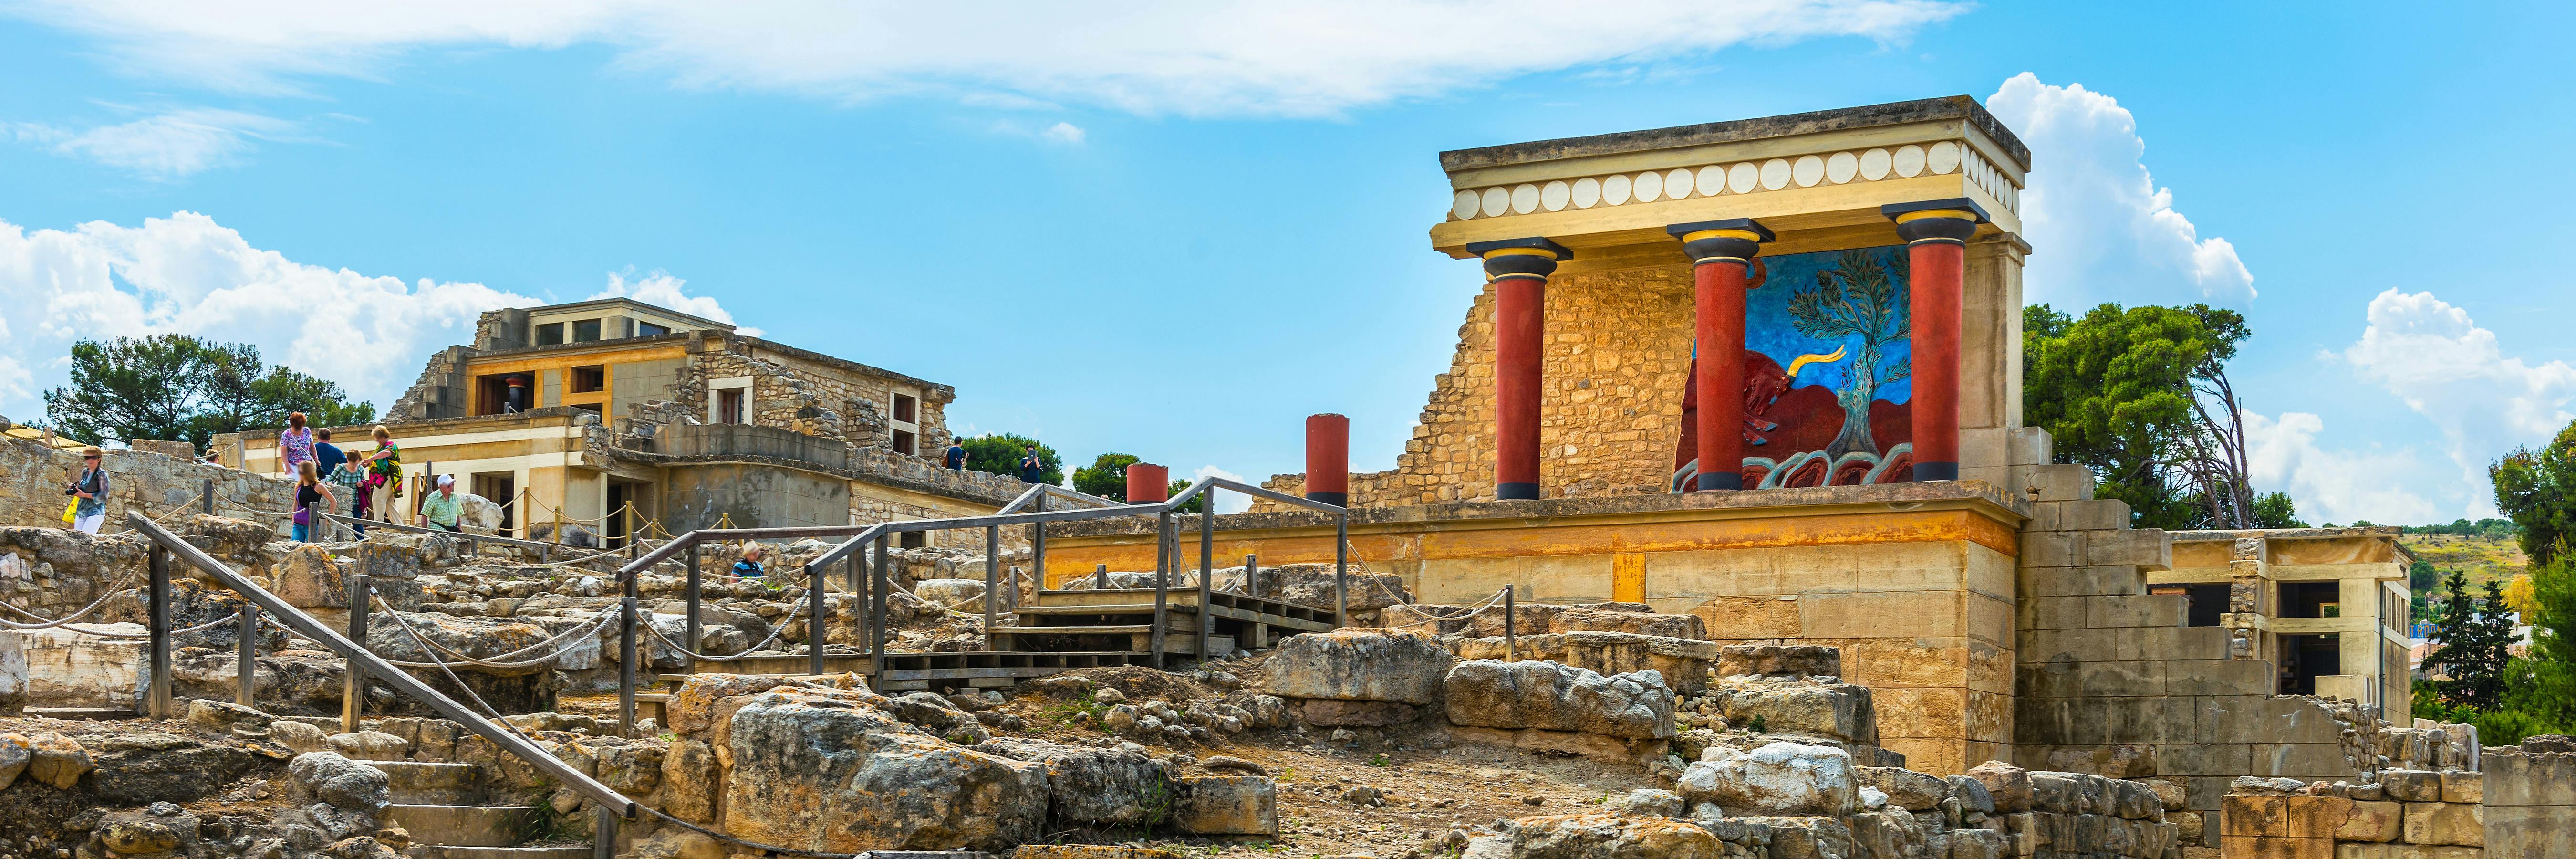 Udforsk Knossos og Det Arkæologiske Museum på rundtur med transport fra Heraklion